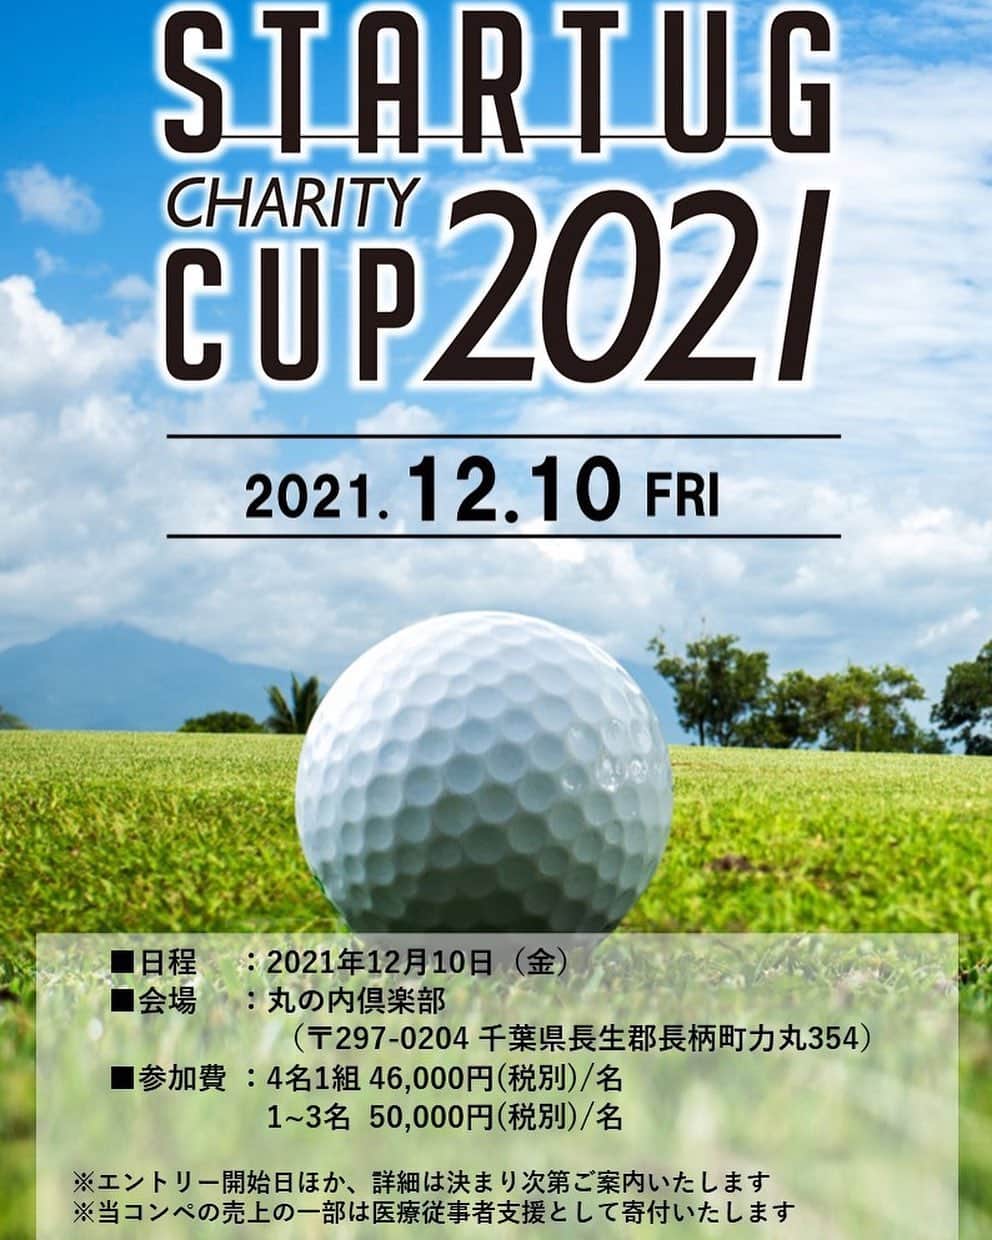 鶴岡果恋のインスタグラム：「.  【イベント告知】  2021年12月10日(金)に パーソナルトレーニングジム 「STARTUG」が主催する チャリティーゴルフコンペ『STARTUG CUP』のお知らせです。  『STARTUG CUP』は 2019年にスタートし 昨年はコロナで中止となりましたが 今年は開催されます。  私たち女子プロゴルファーが 20名以上参加して ニアピン対決や 女子プロが本気で参戦する パッティング対決&ドラコン対決！  さらに 皆様のプレー中 人気女子プロがカートに乗って やってきます。  女子プロゴルファーとの記念撮影や SNS投稿も可能です。  ファンの皆様に楽しんでいただけるイベントが盛りだくさんの 日本唯一のゴルフイベントです！ （※女子プロゴルファーと同組でのプレーはございません）  エントリー開始日など 詳細は決まり次第 ご案内させていただきます！  まずは是非、日程の確保をお願い致します！  『STARTUG CUP』事務局スタッフ一丸となり 皆様に安心してご参加頂けるように コロナ対策も準備を進めておりますので どうぞご期待下さい！  ご参加を心より お待ち申し上げております！  #STARTUGCUP2021 #日本唯一のゴルフコンペ #チャリティー #女子プロゴルファー #女子プロ #プロゴルファー #ゴルフ #ゴルフコンペ #スペシャルイベント #ファンイベント #プロアマ #チャリティーイベント #チャリティーコンペ #ゴルフ場貸切 #ドラコン #ニアピン #パッティング #STARTUG #パーソナルトレーニングジム」